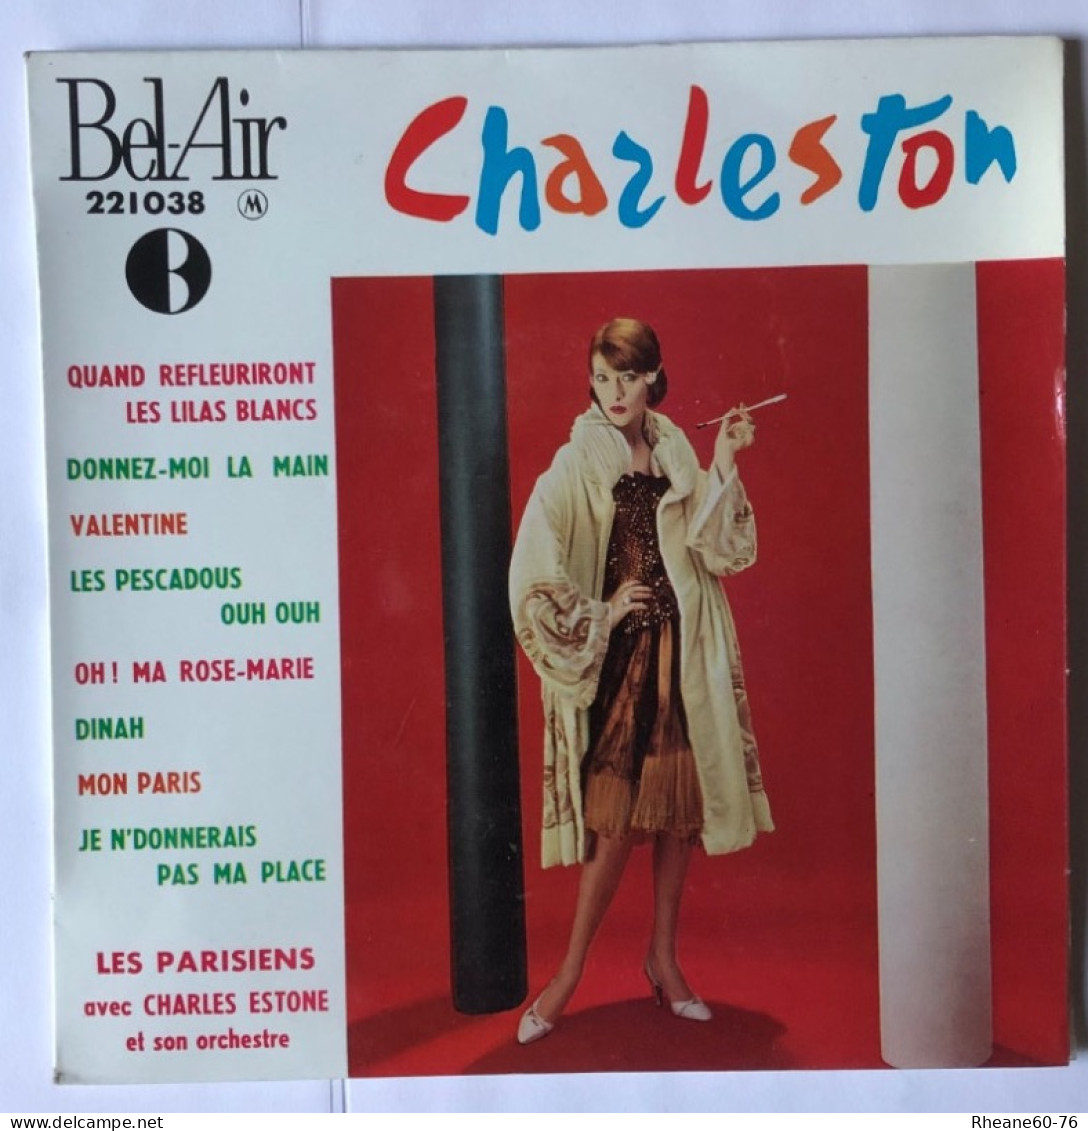 Bel-Air 221038 - 45T EP - Les Parisiens Avec Charles Estone Et Son Orchestre - Charleston - Speciale Formaten